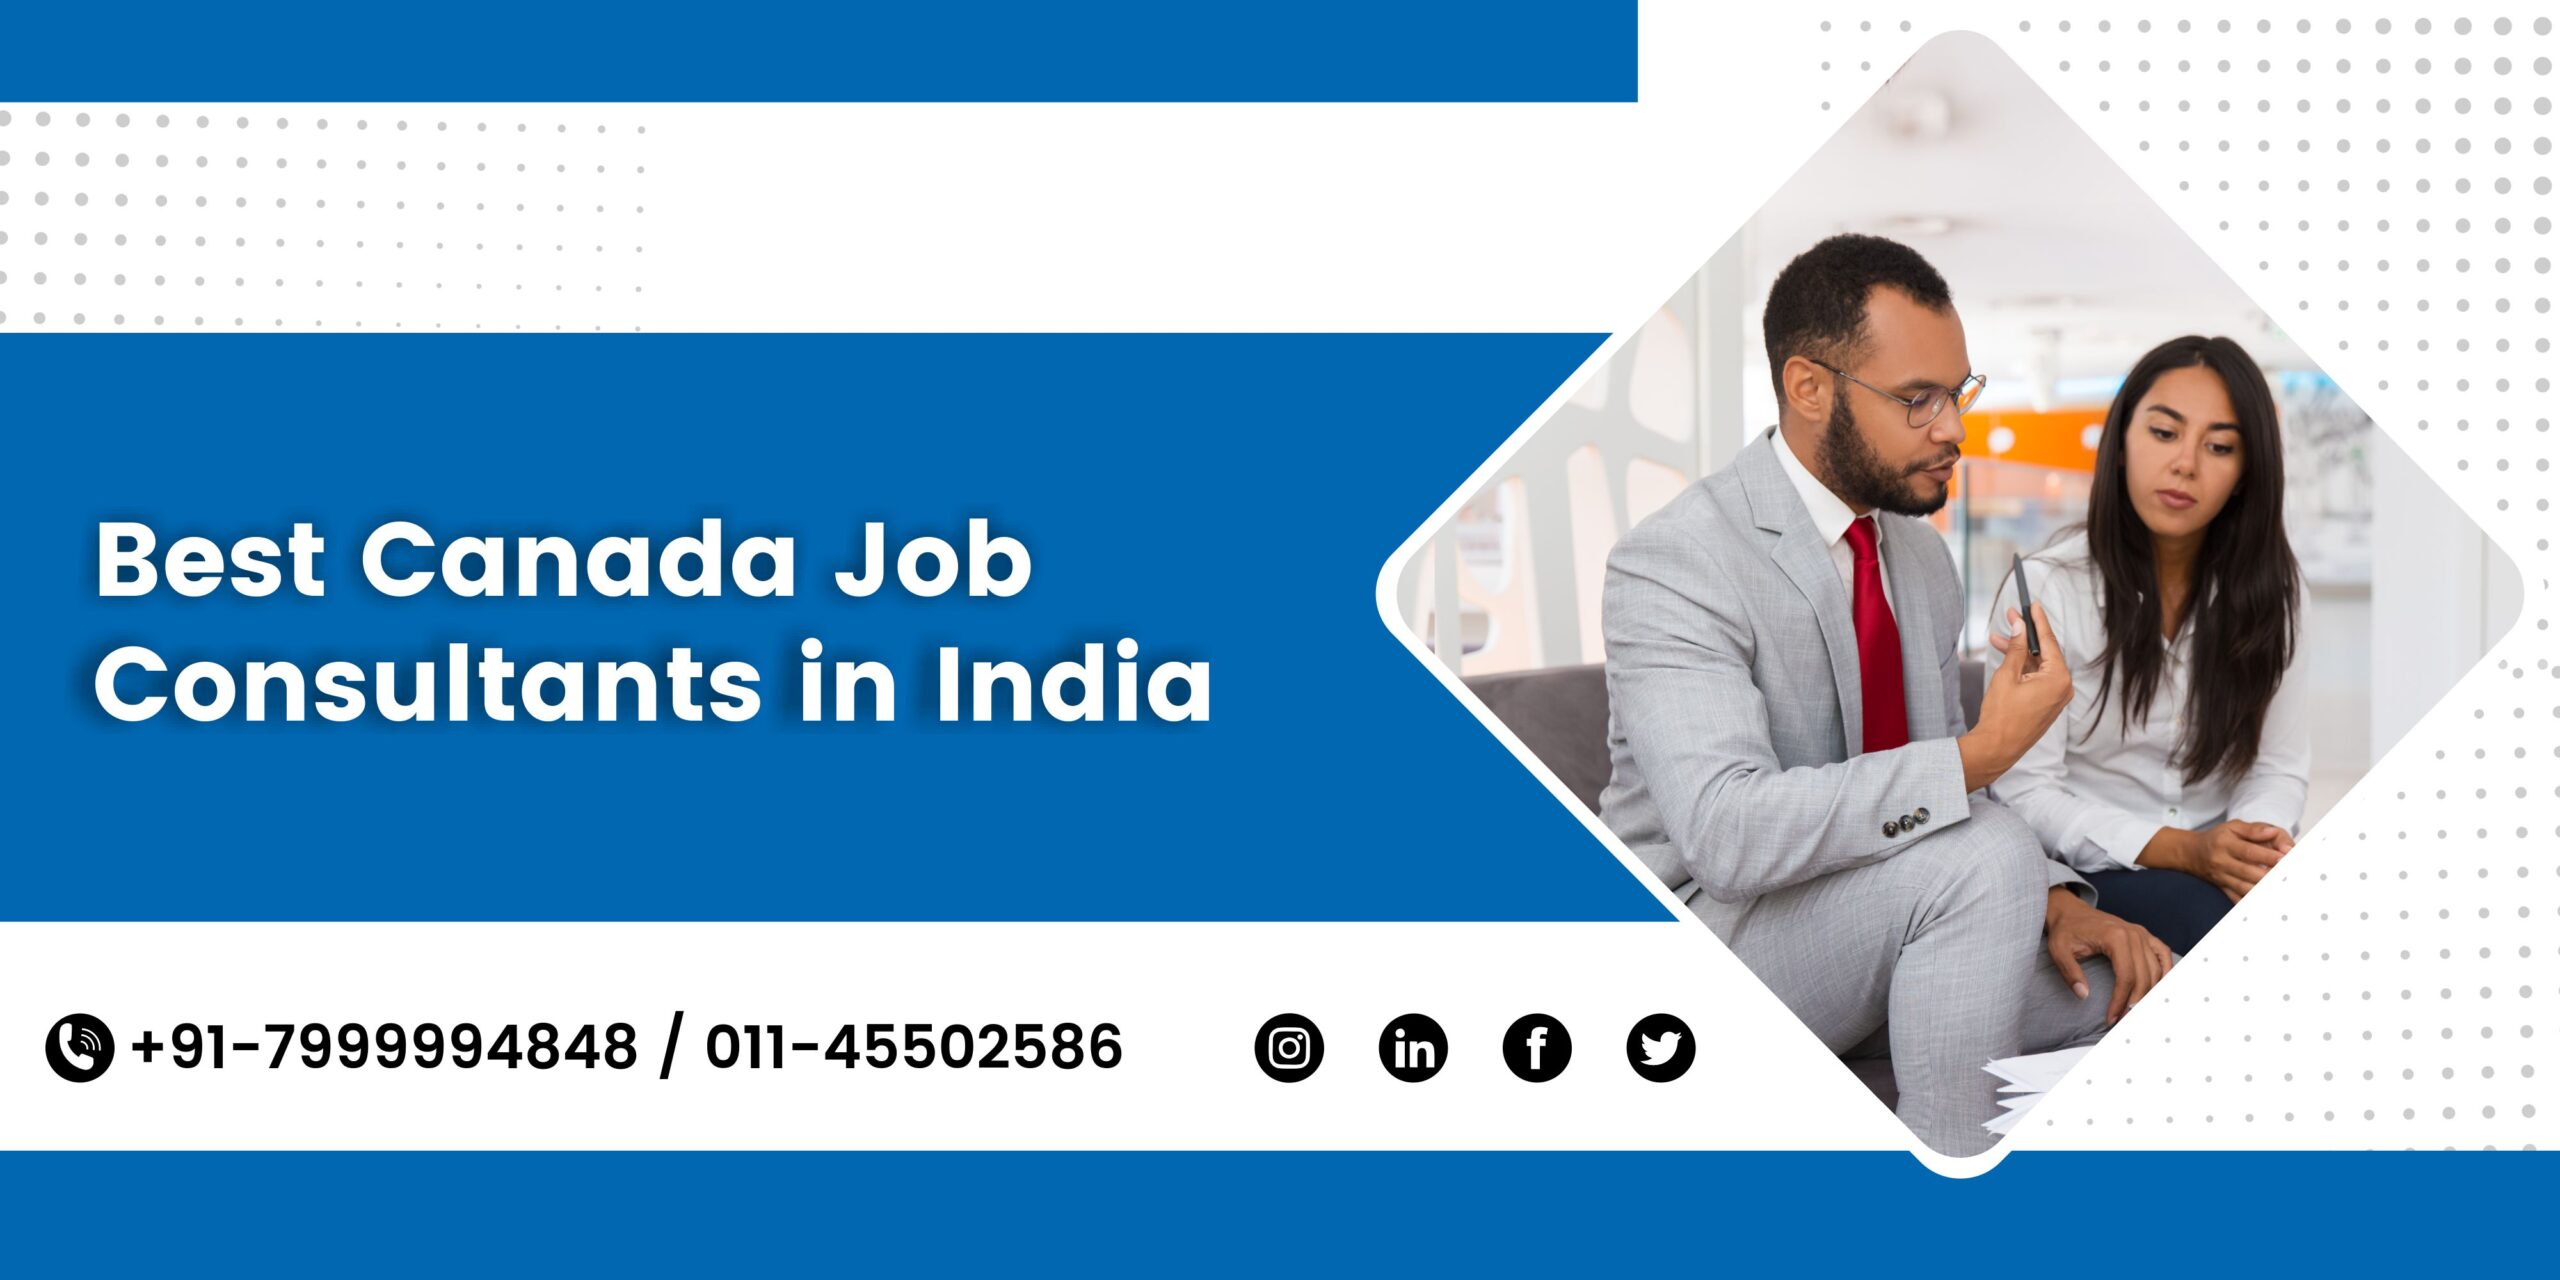 Best Canada Job Consultants in India